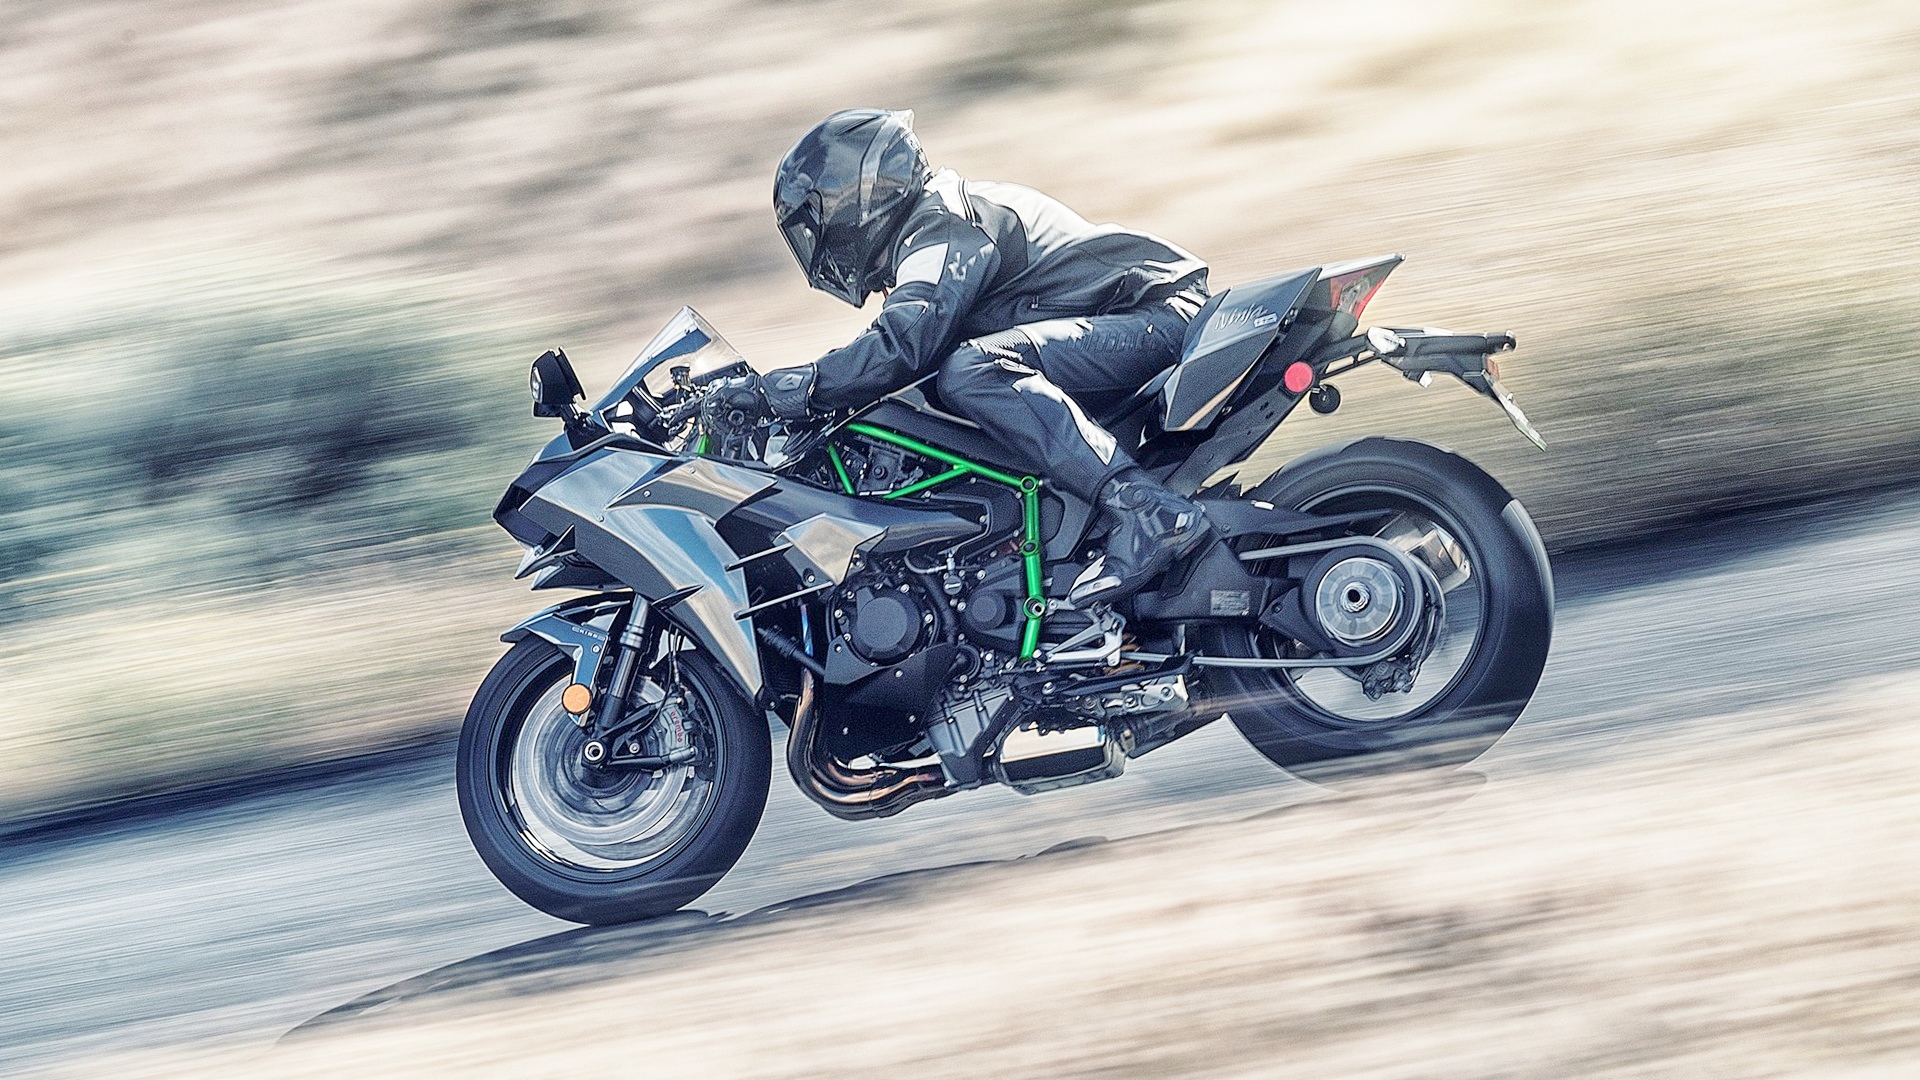 Kawasaki Ninja H2 2019 trở thành siêu môtô mạnh nhất thế giới